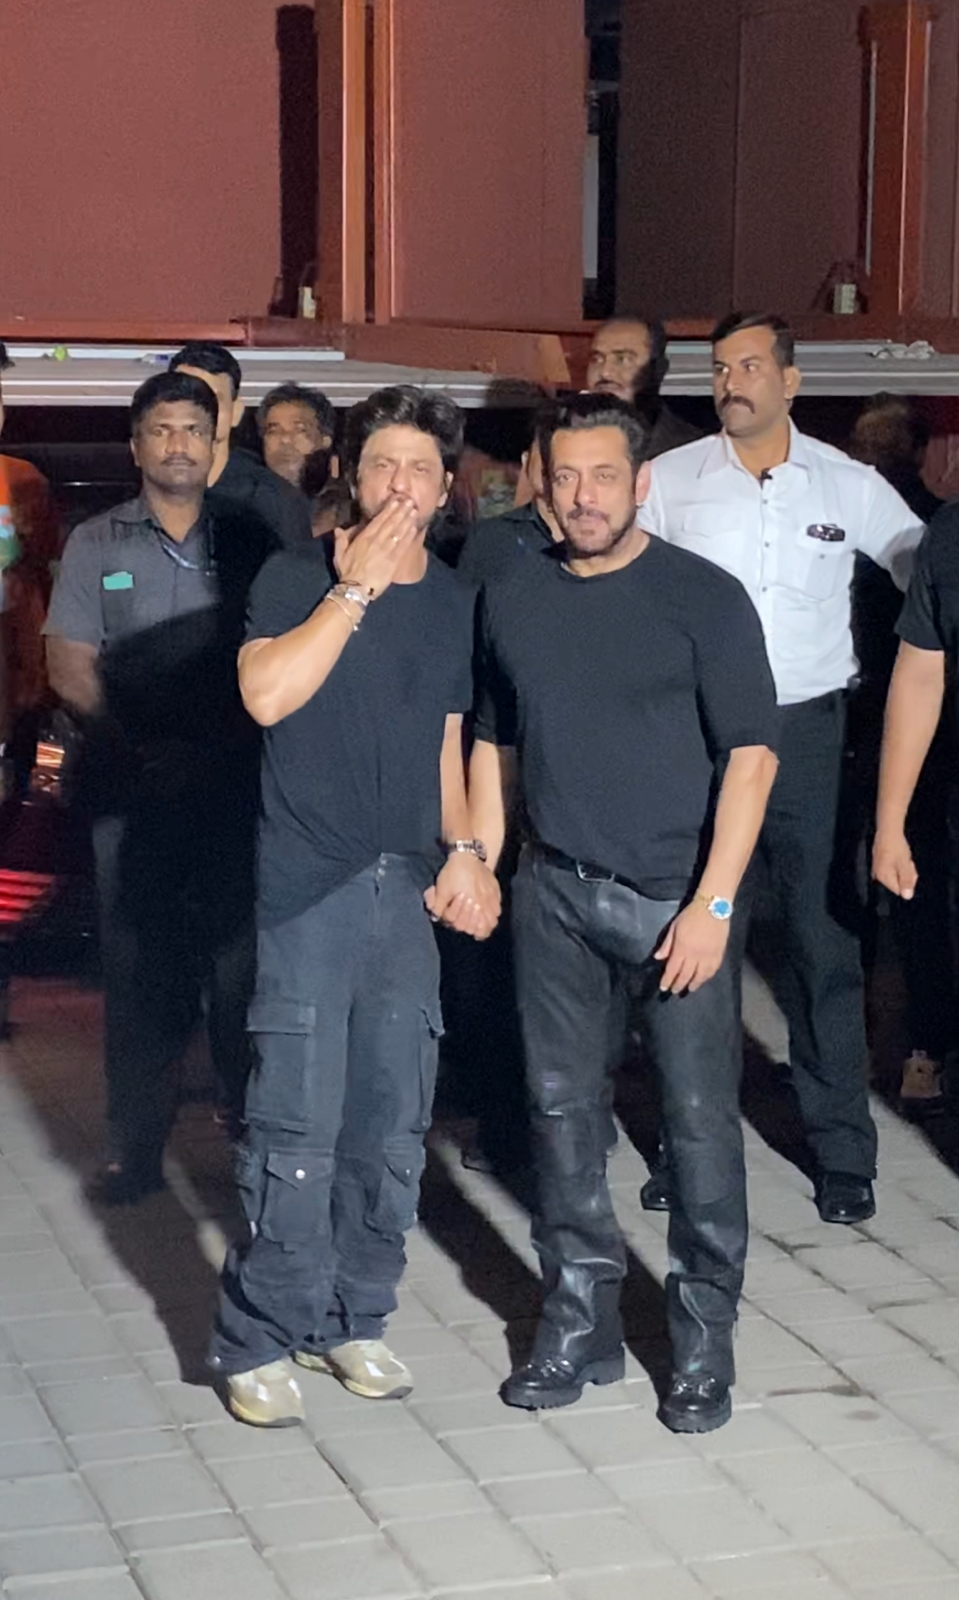 Photos: When Aayush Sharma bumped into Shah Rukh Khan at a recording studio  in Mumbai | Hindi Movie News - Times of India